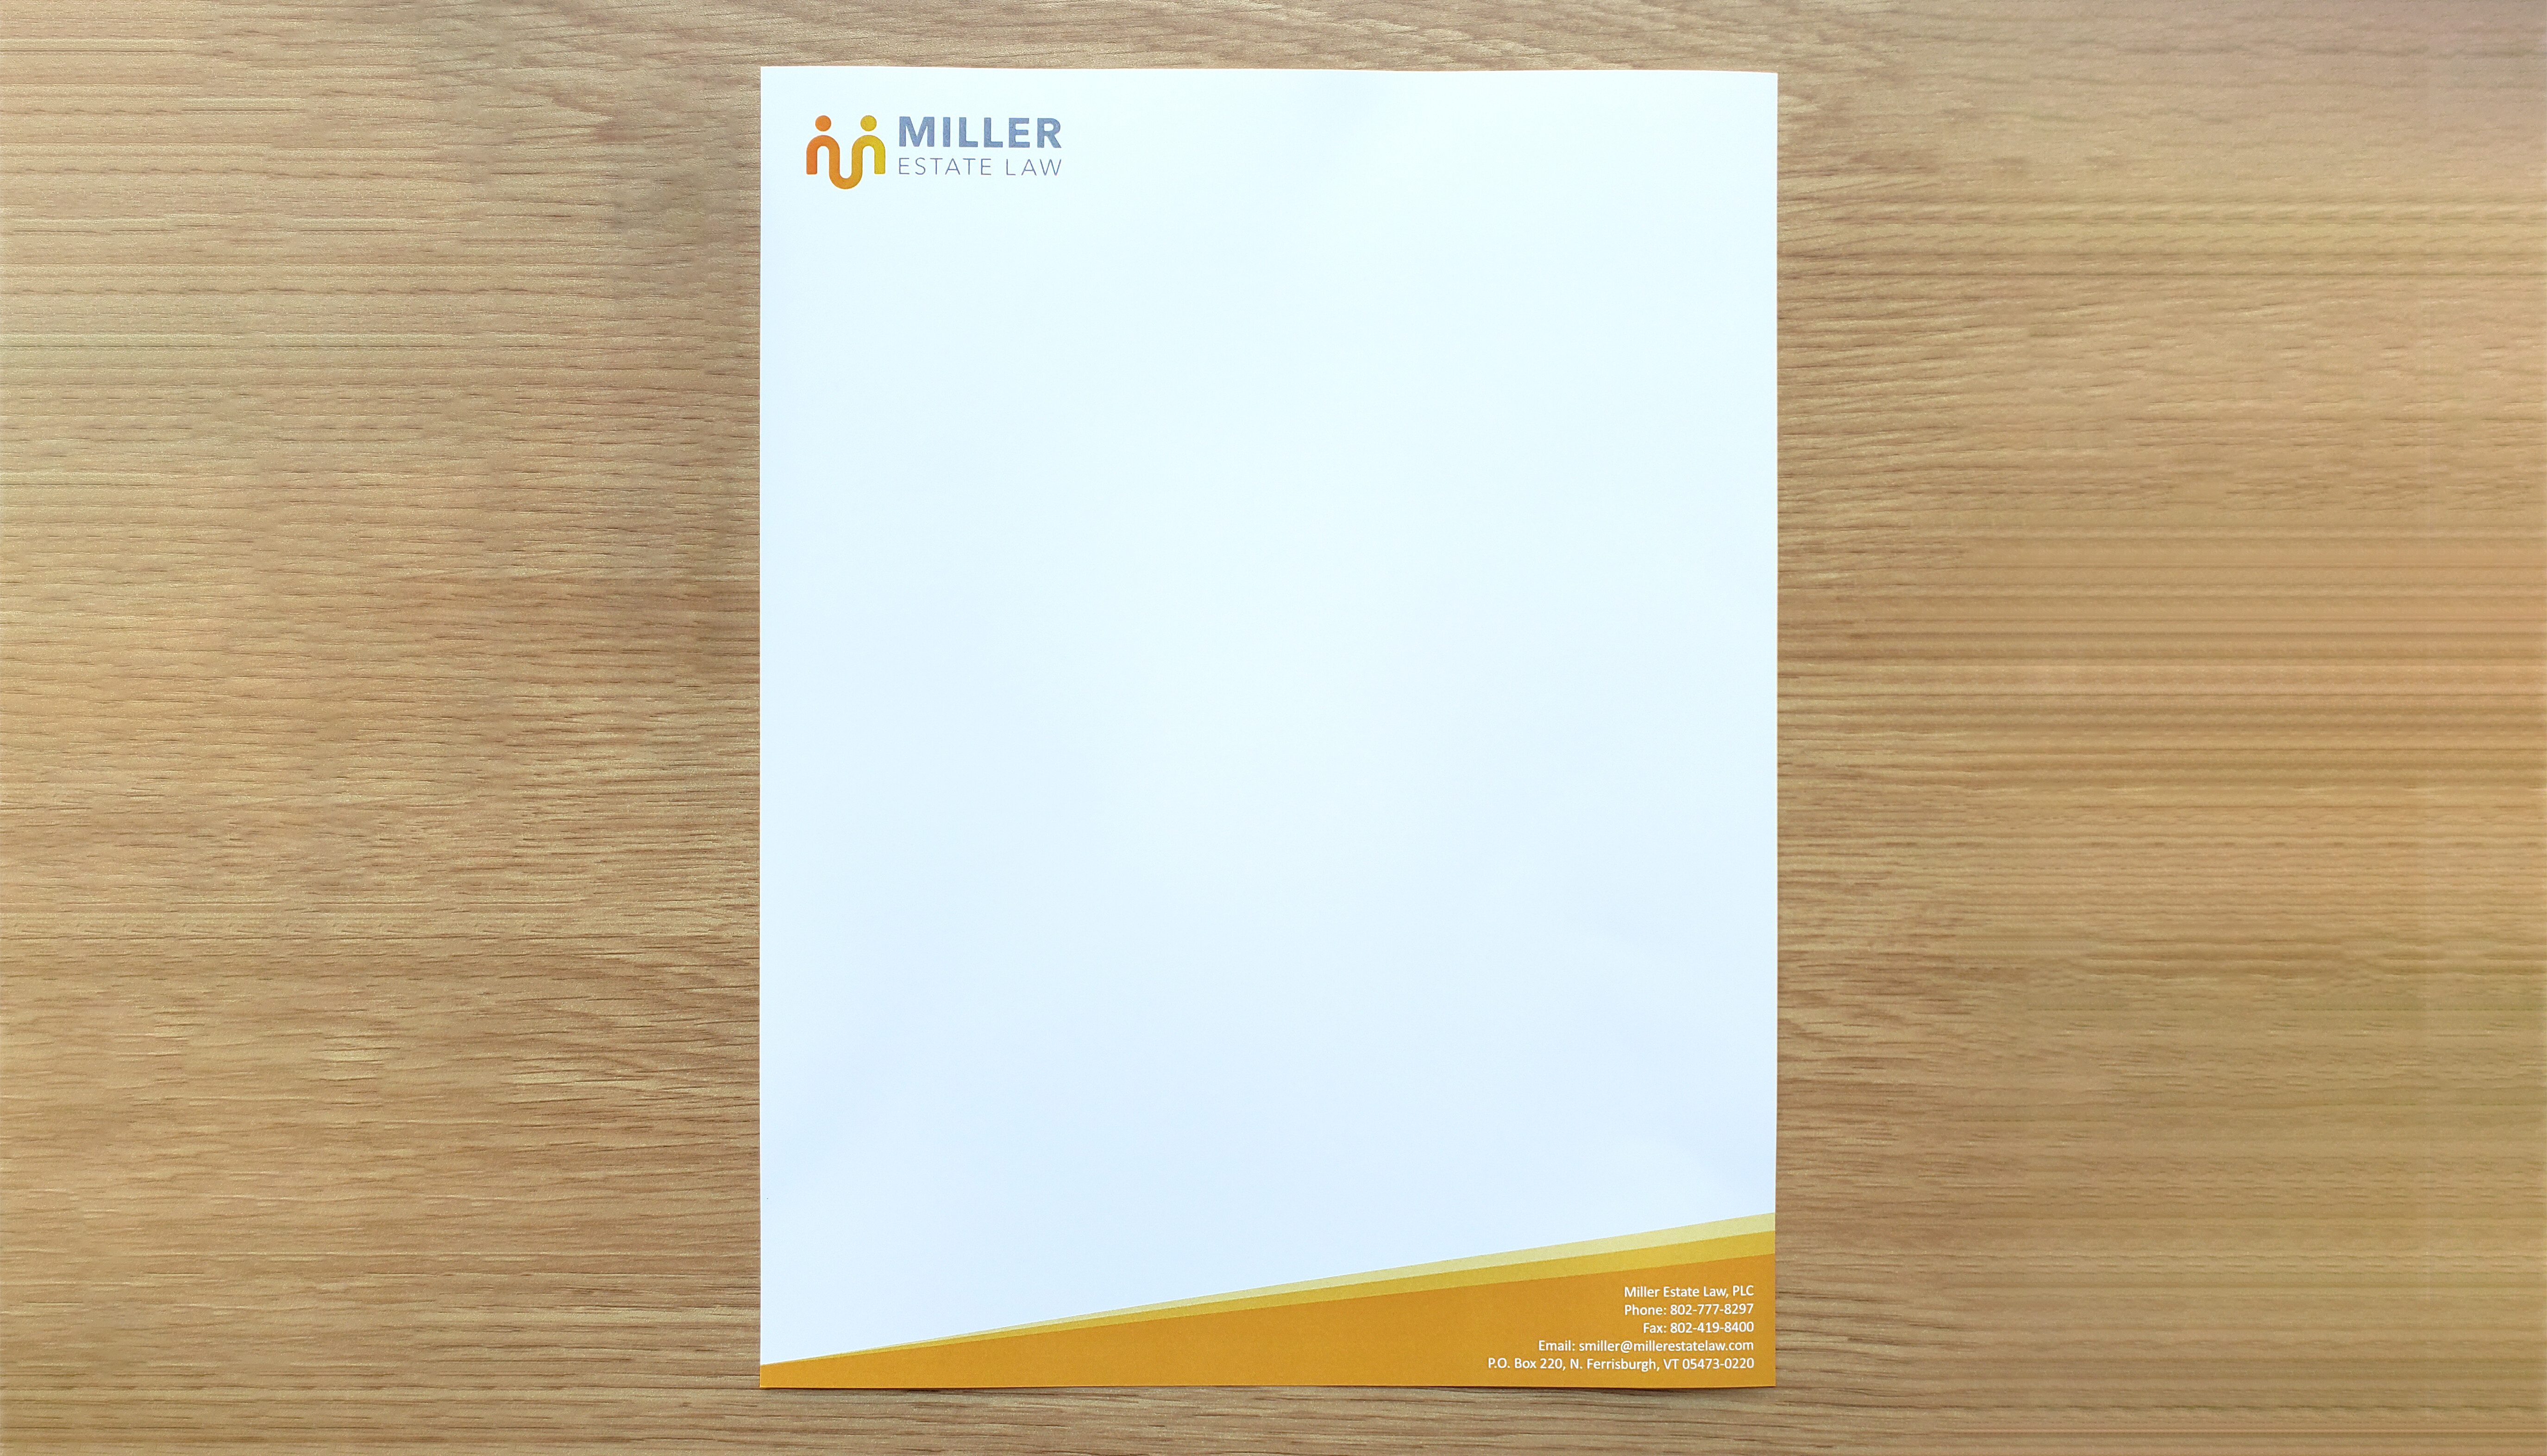 Custom designed letterhead and #10 envelopes for Miller Estate Law